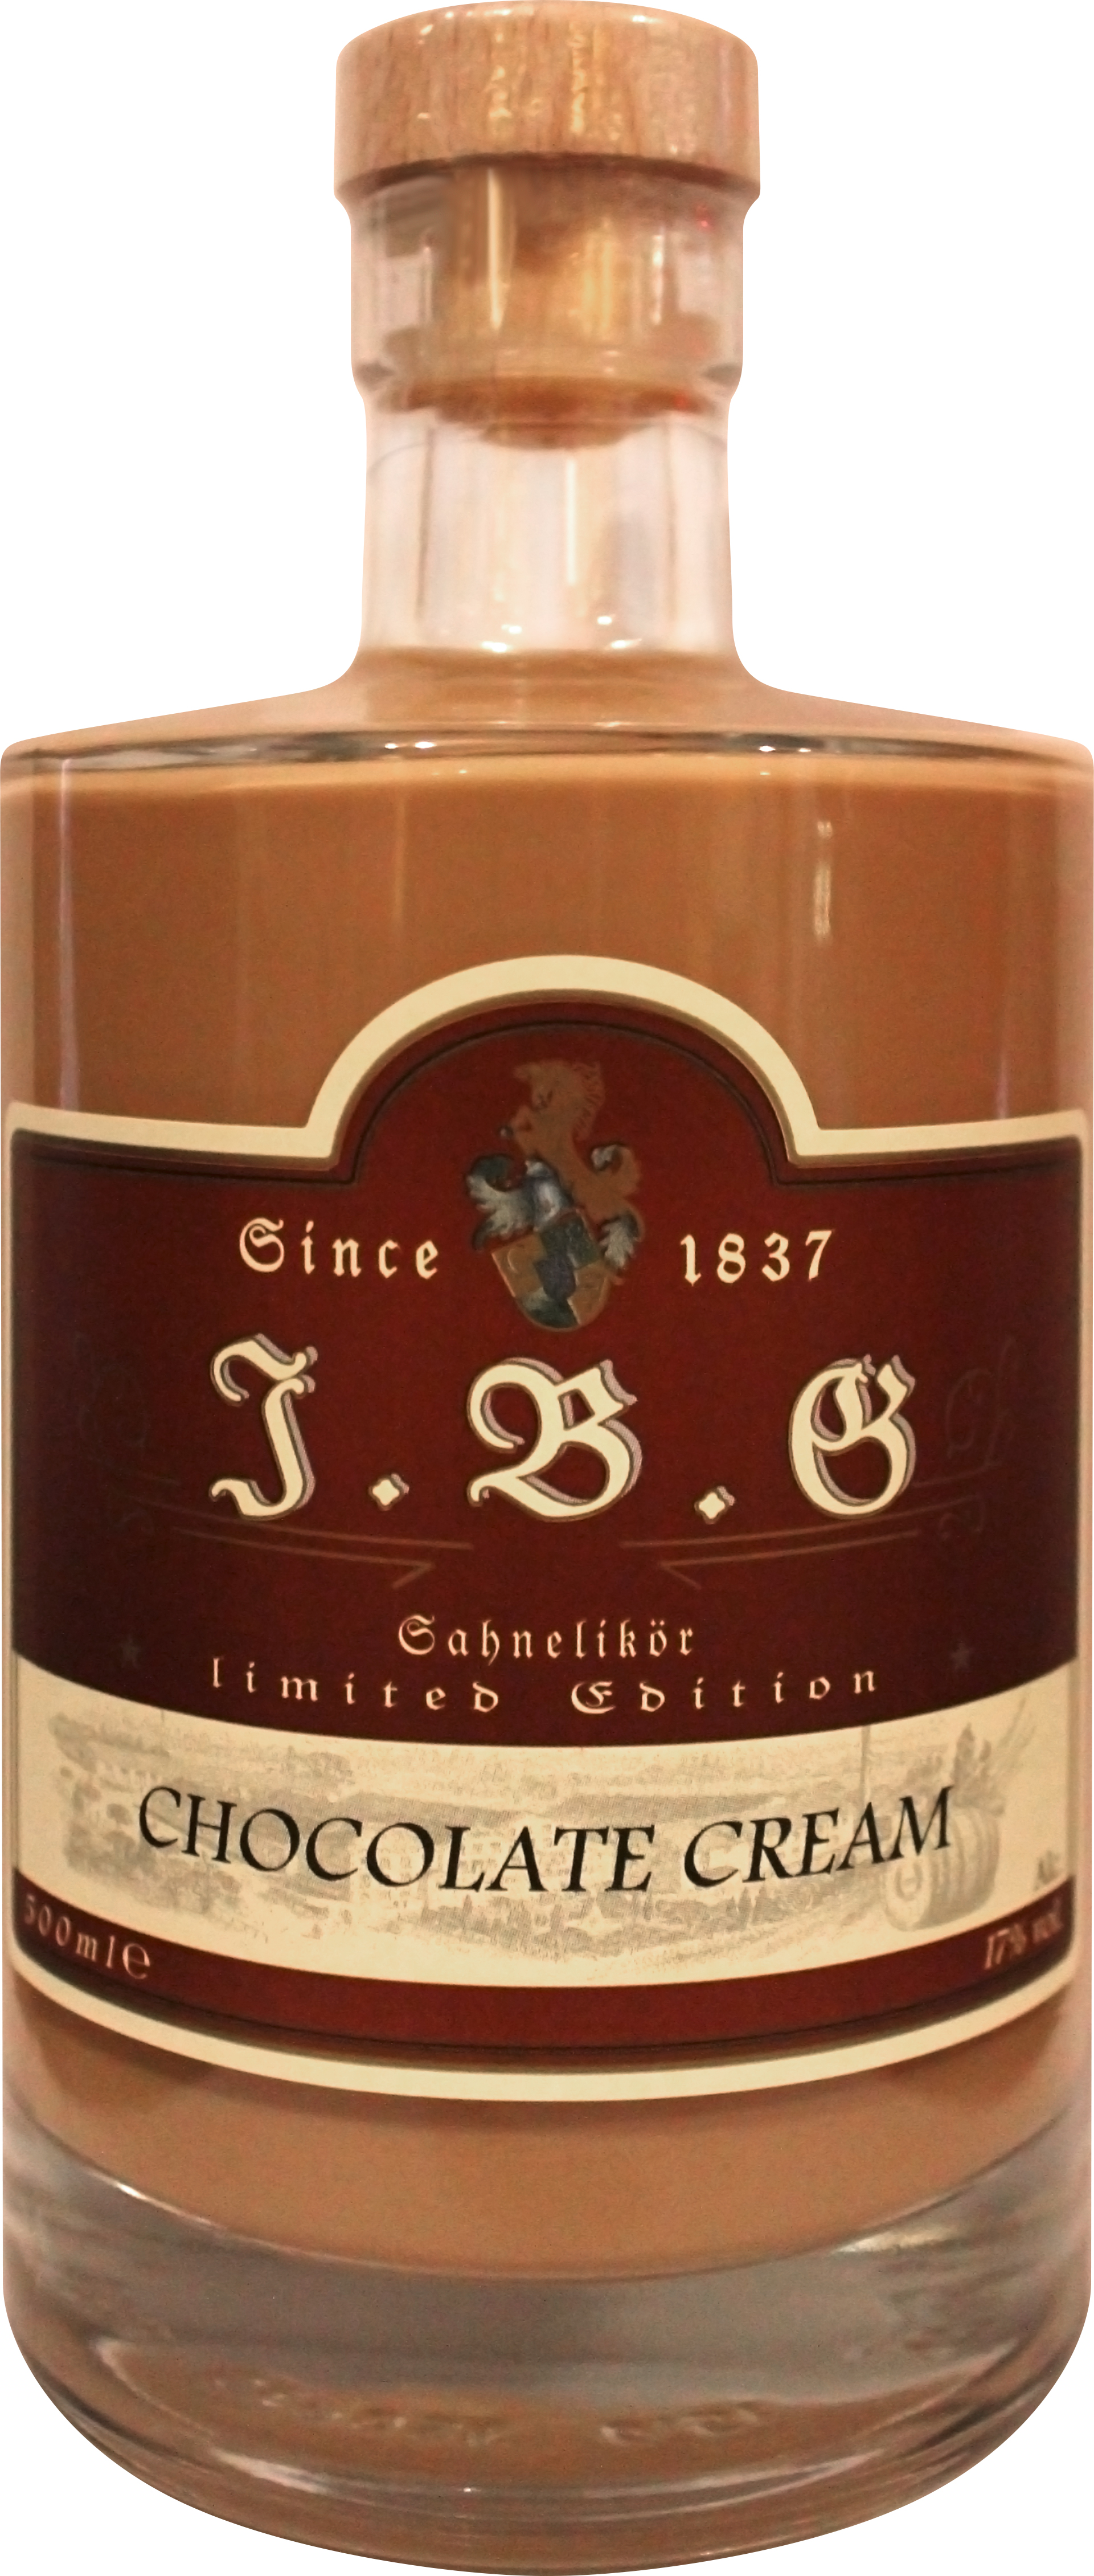 Cream ltr. 0,5 Geuting Gutsbrennerei 17%vol., Sahnelikör Chocolate |